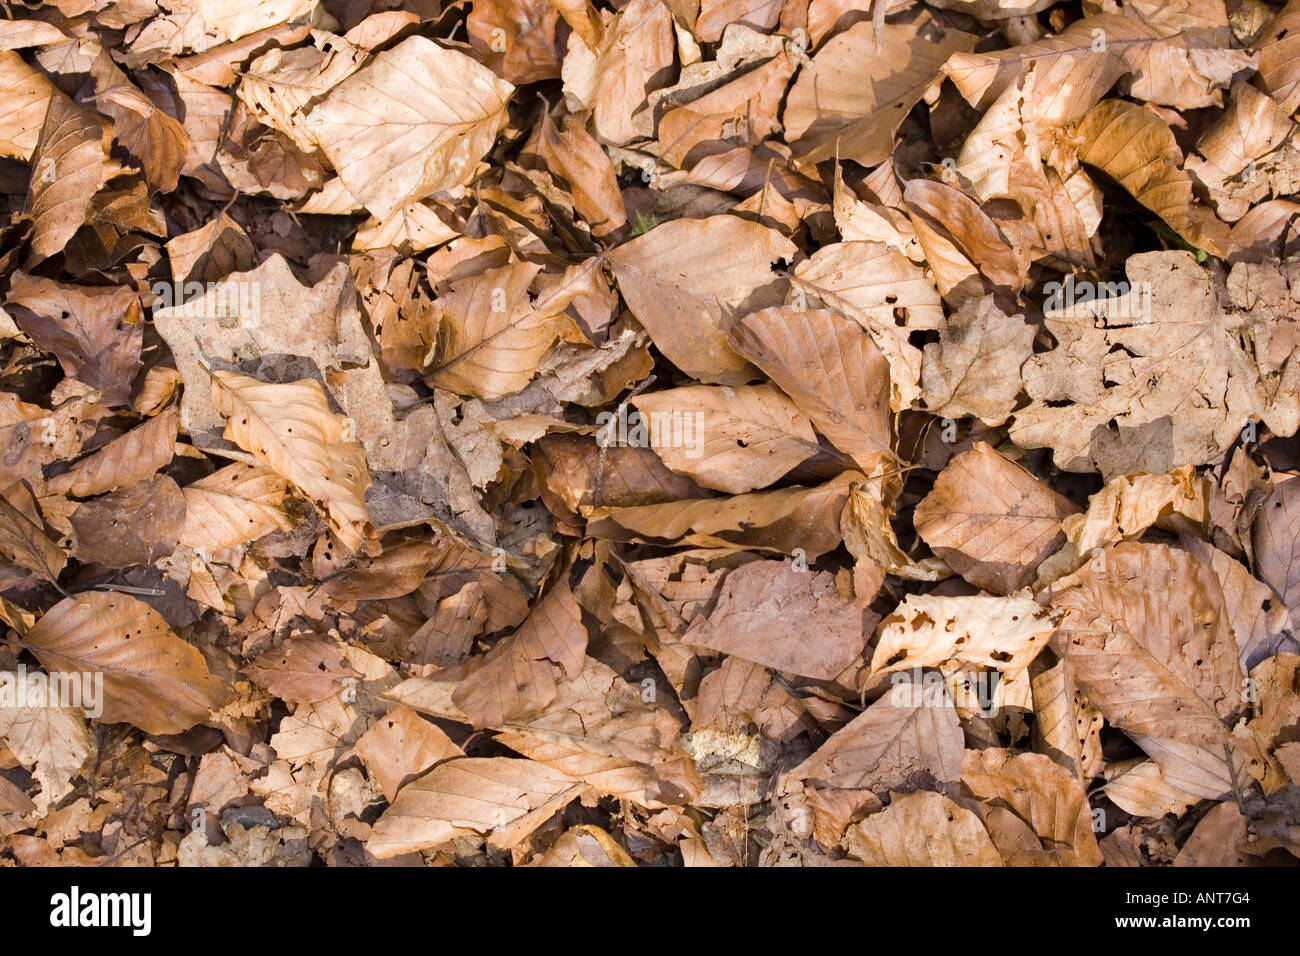 dead,fallen leaves Stock Photo